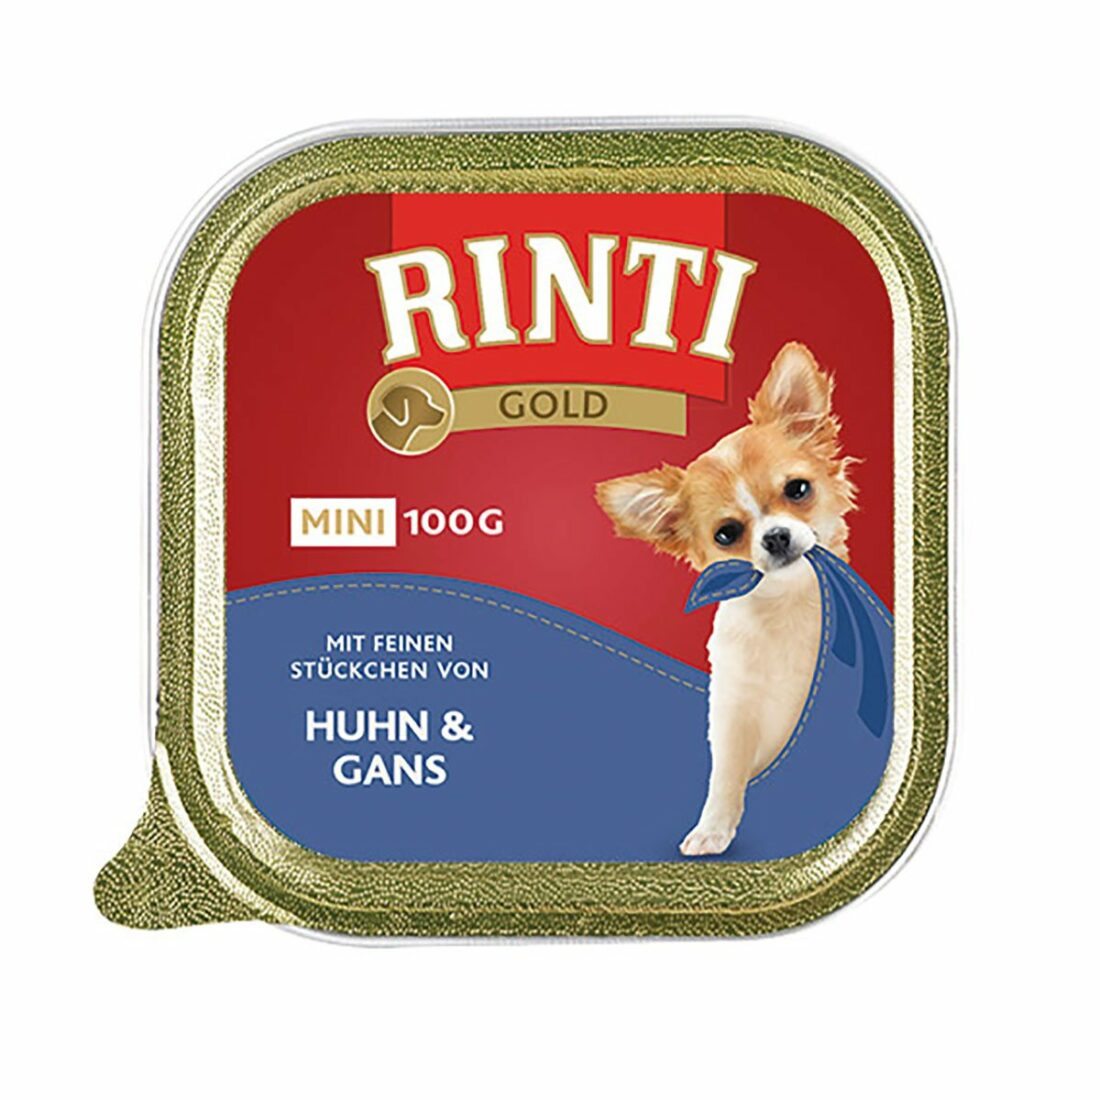 Rinti Gold Mini s jemnými kousky kuřecího masa